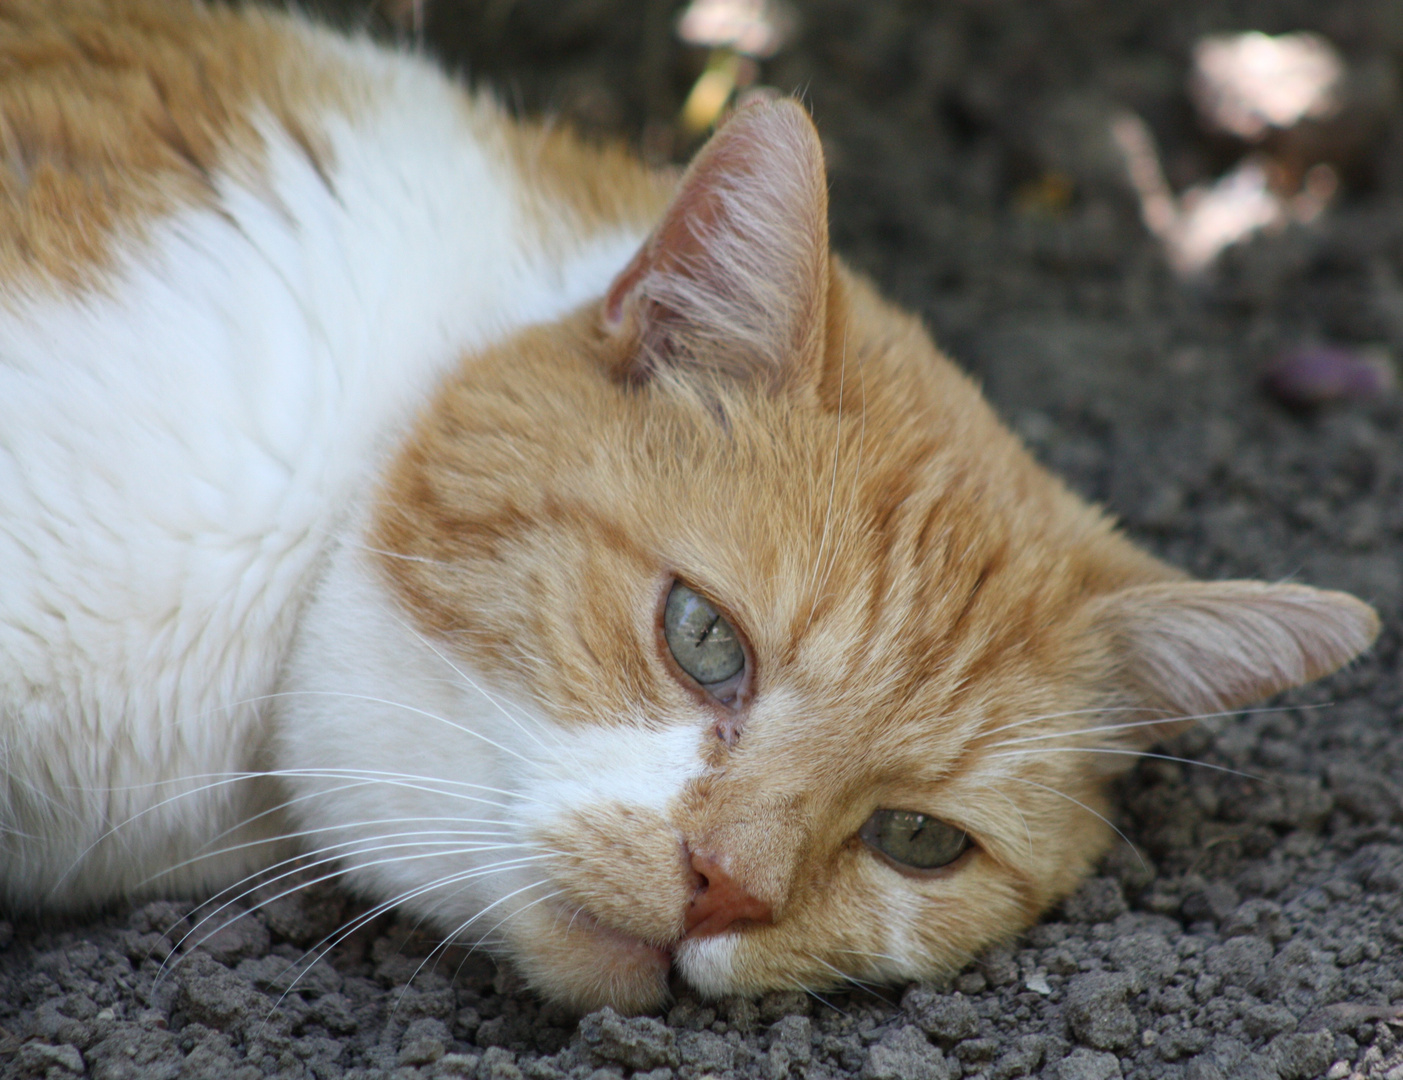 Zum Katzenwelttag denken wir alle auch an Pinky, der leider vor kurzem verstorben ist.